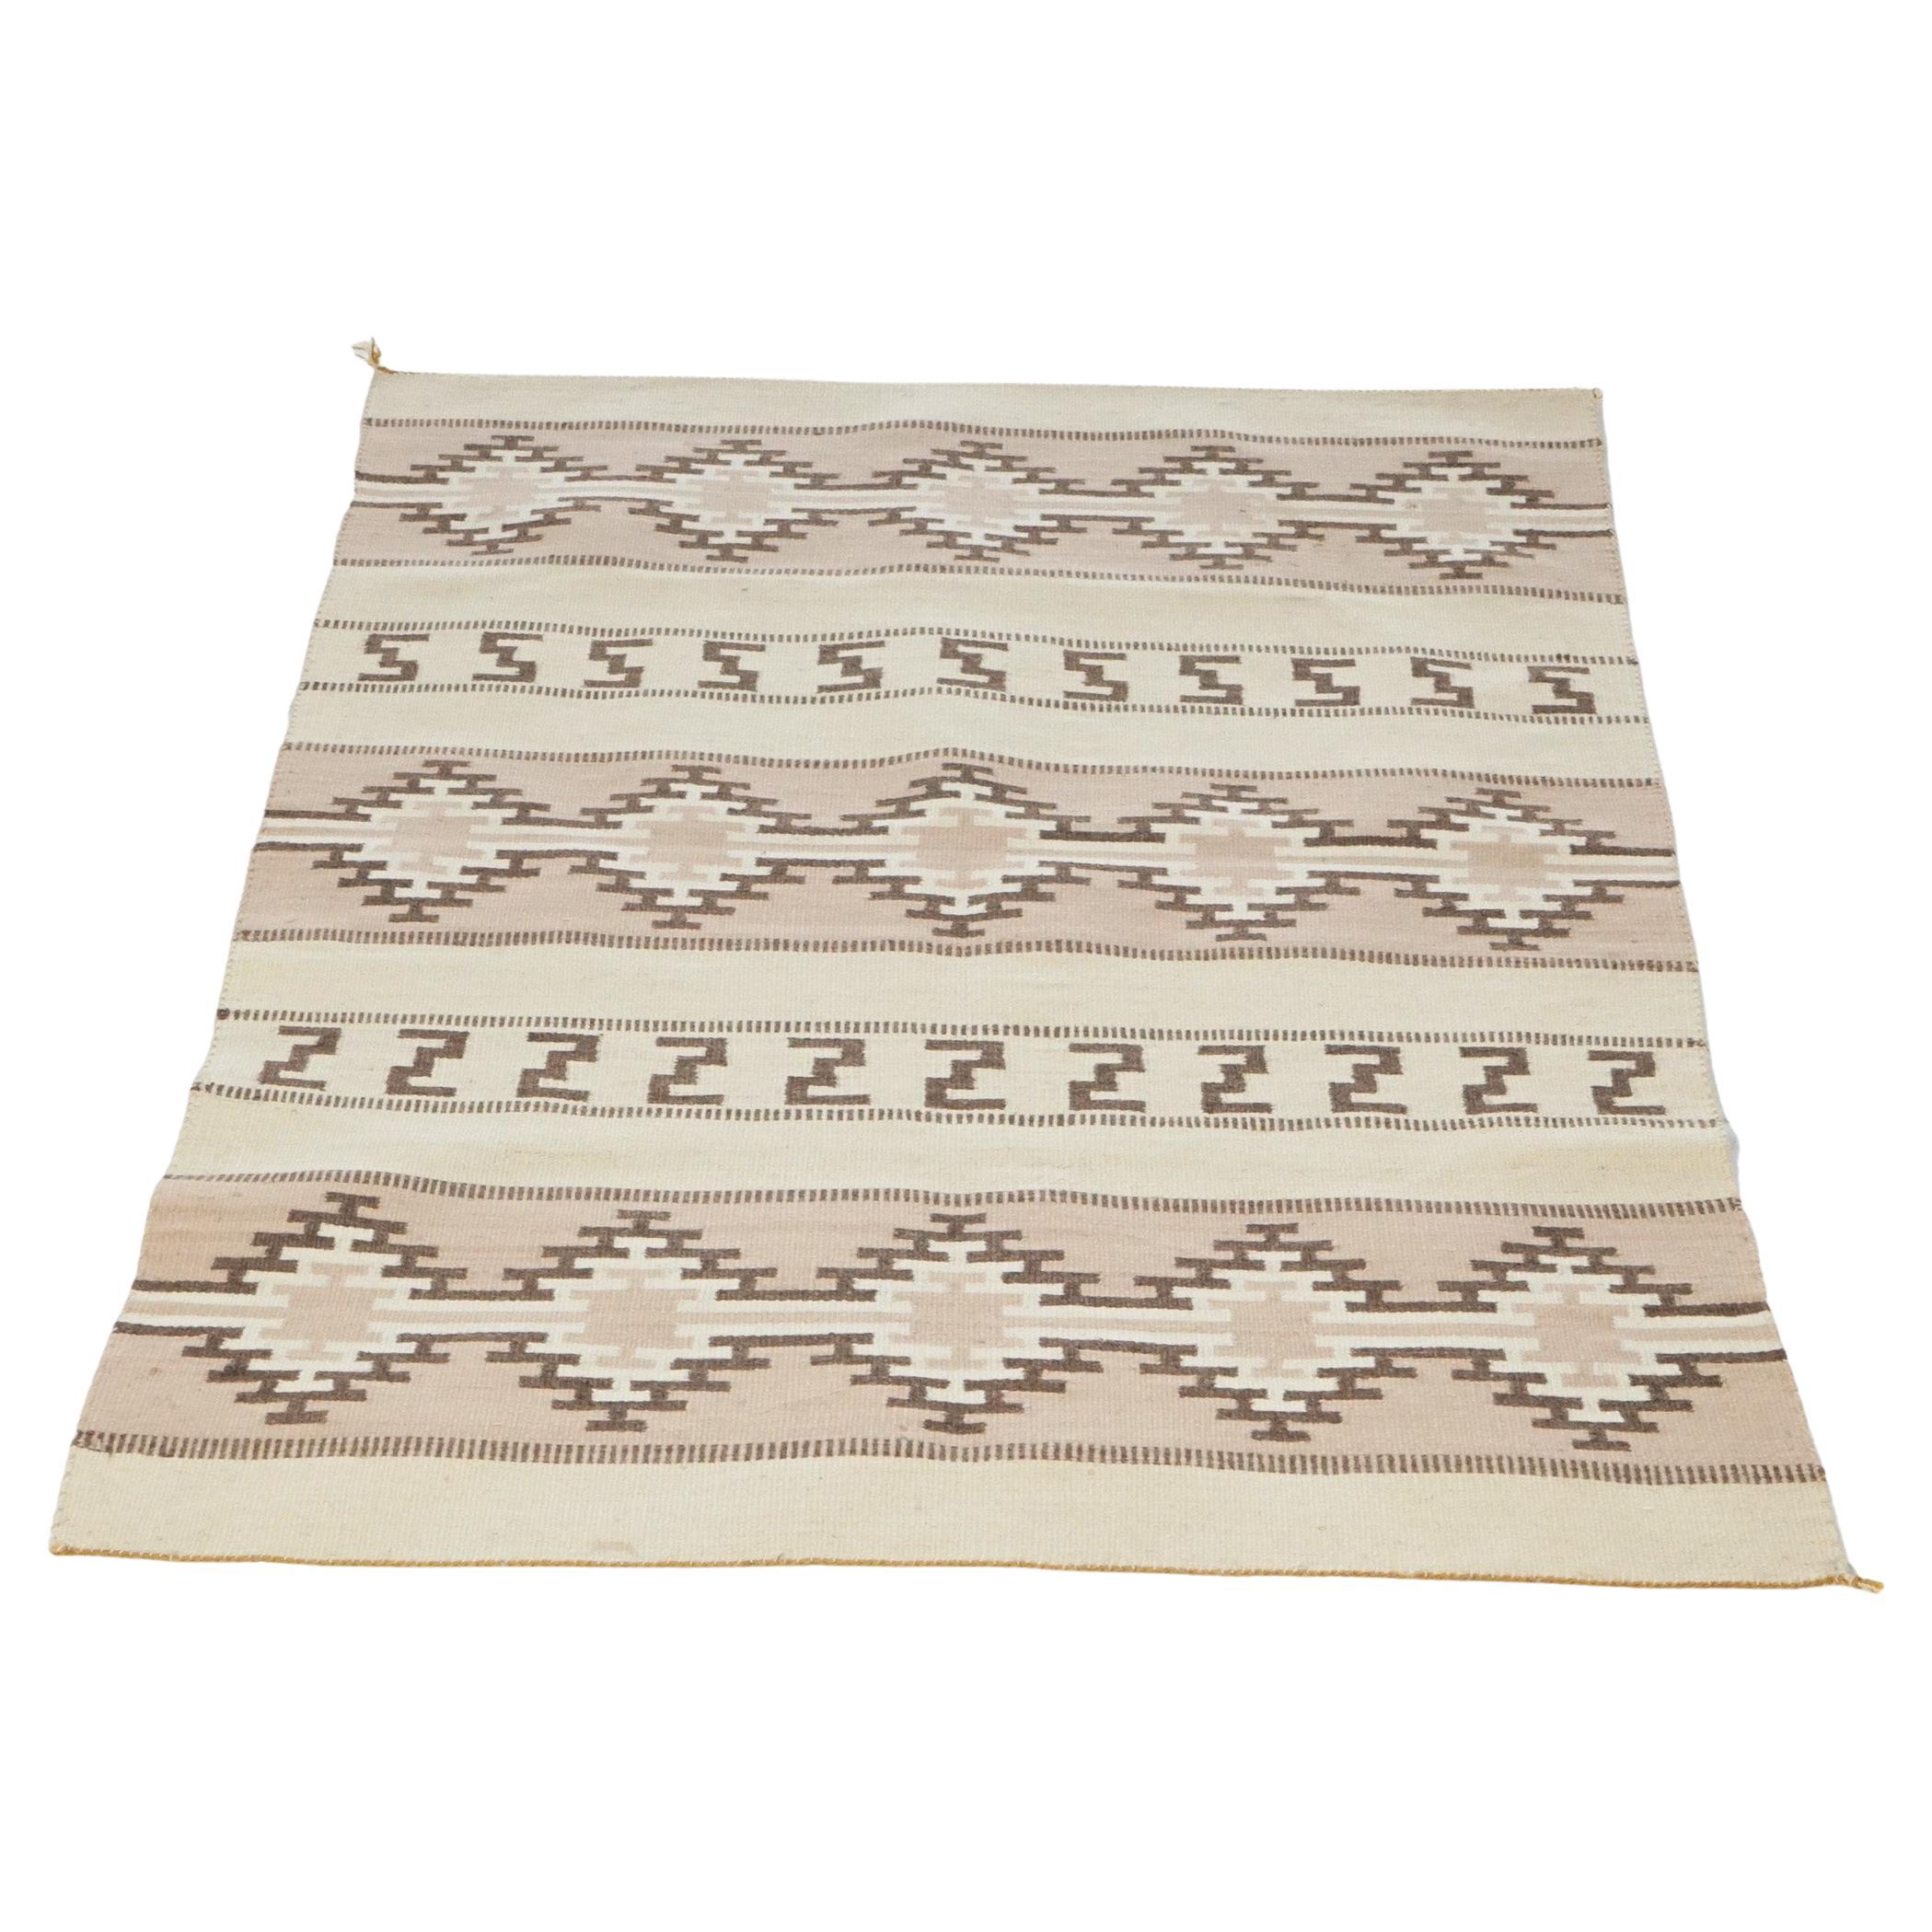 Südwestamerikanischer indischer Teppich im Navajo-Stil des 20. Jahrhunderts